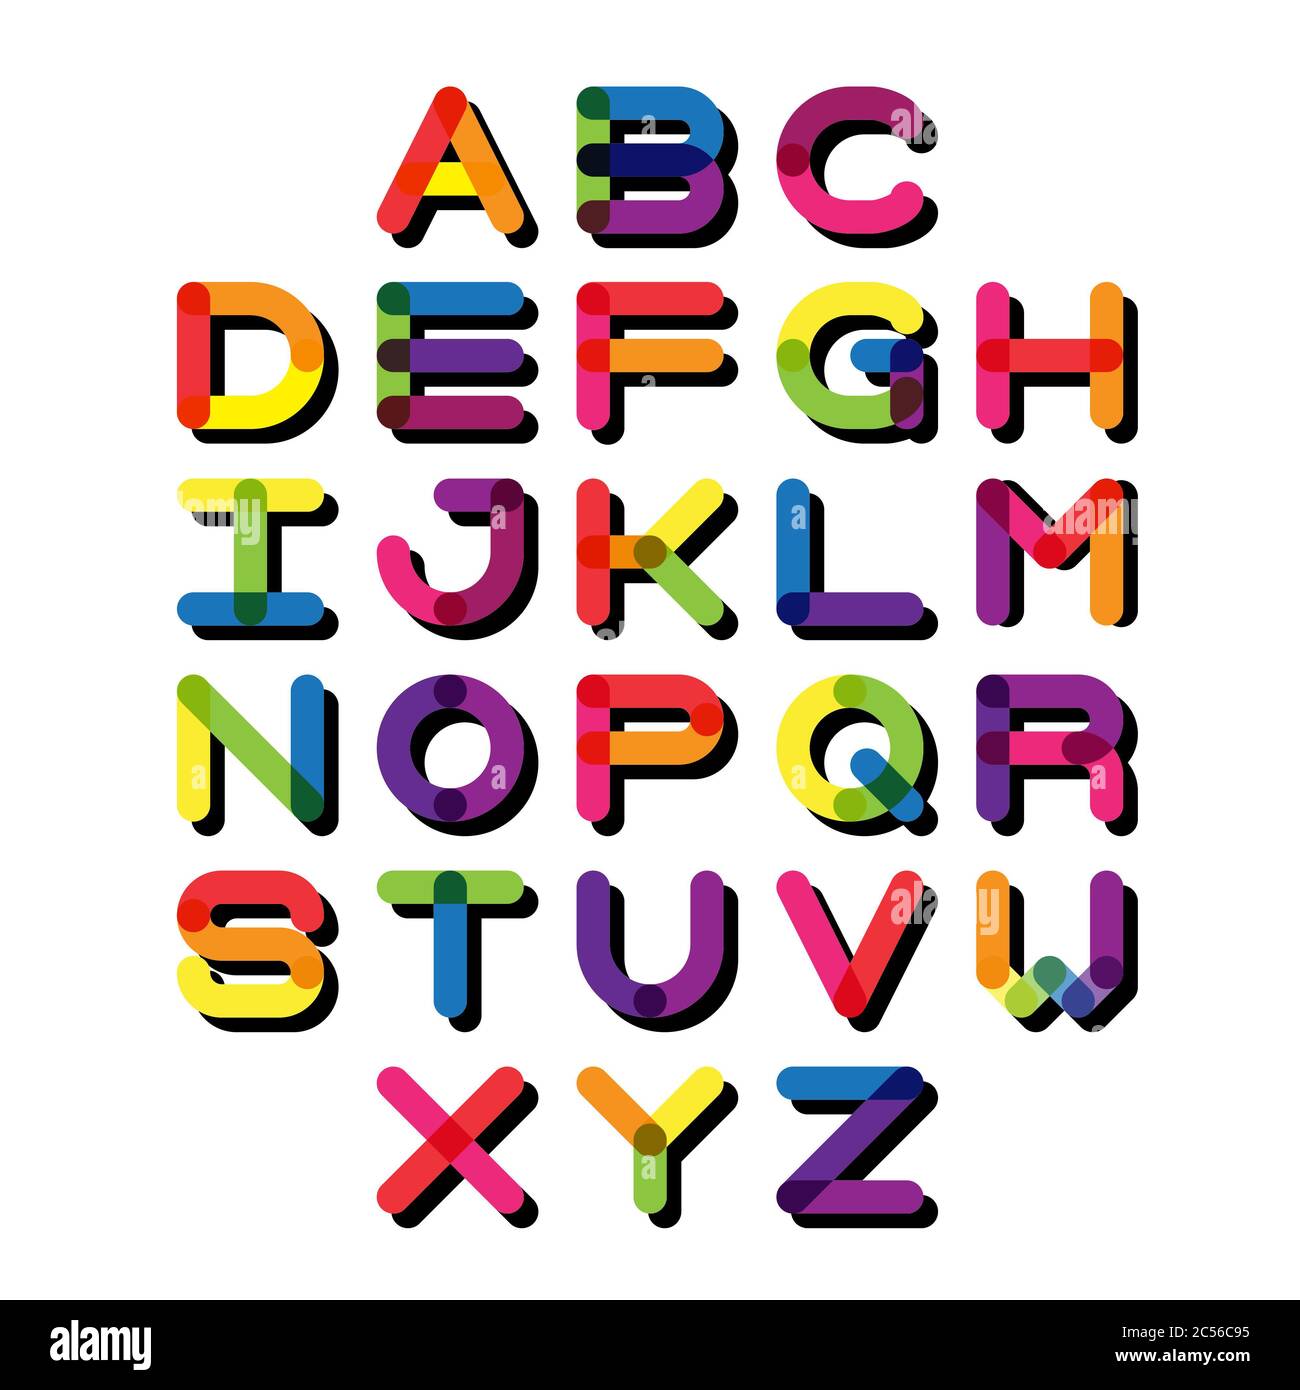 Lettere dell'alfabeto immagini e fotografie stock ad alta risoluzione -  Alamy